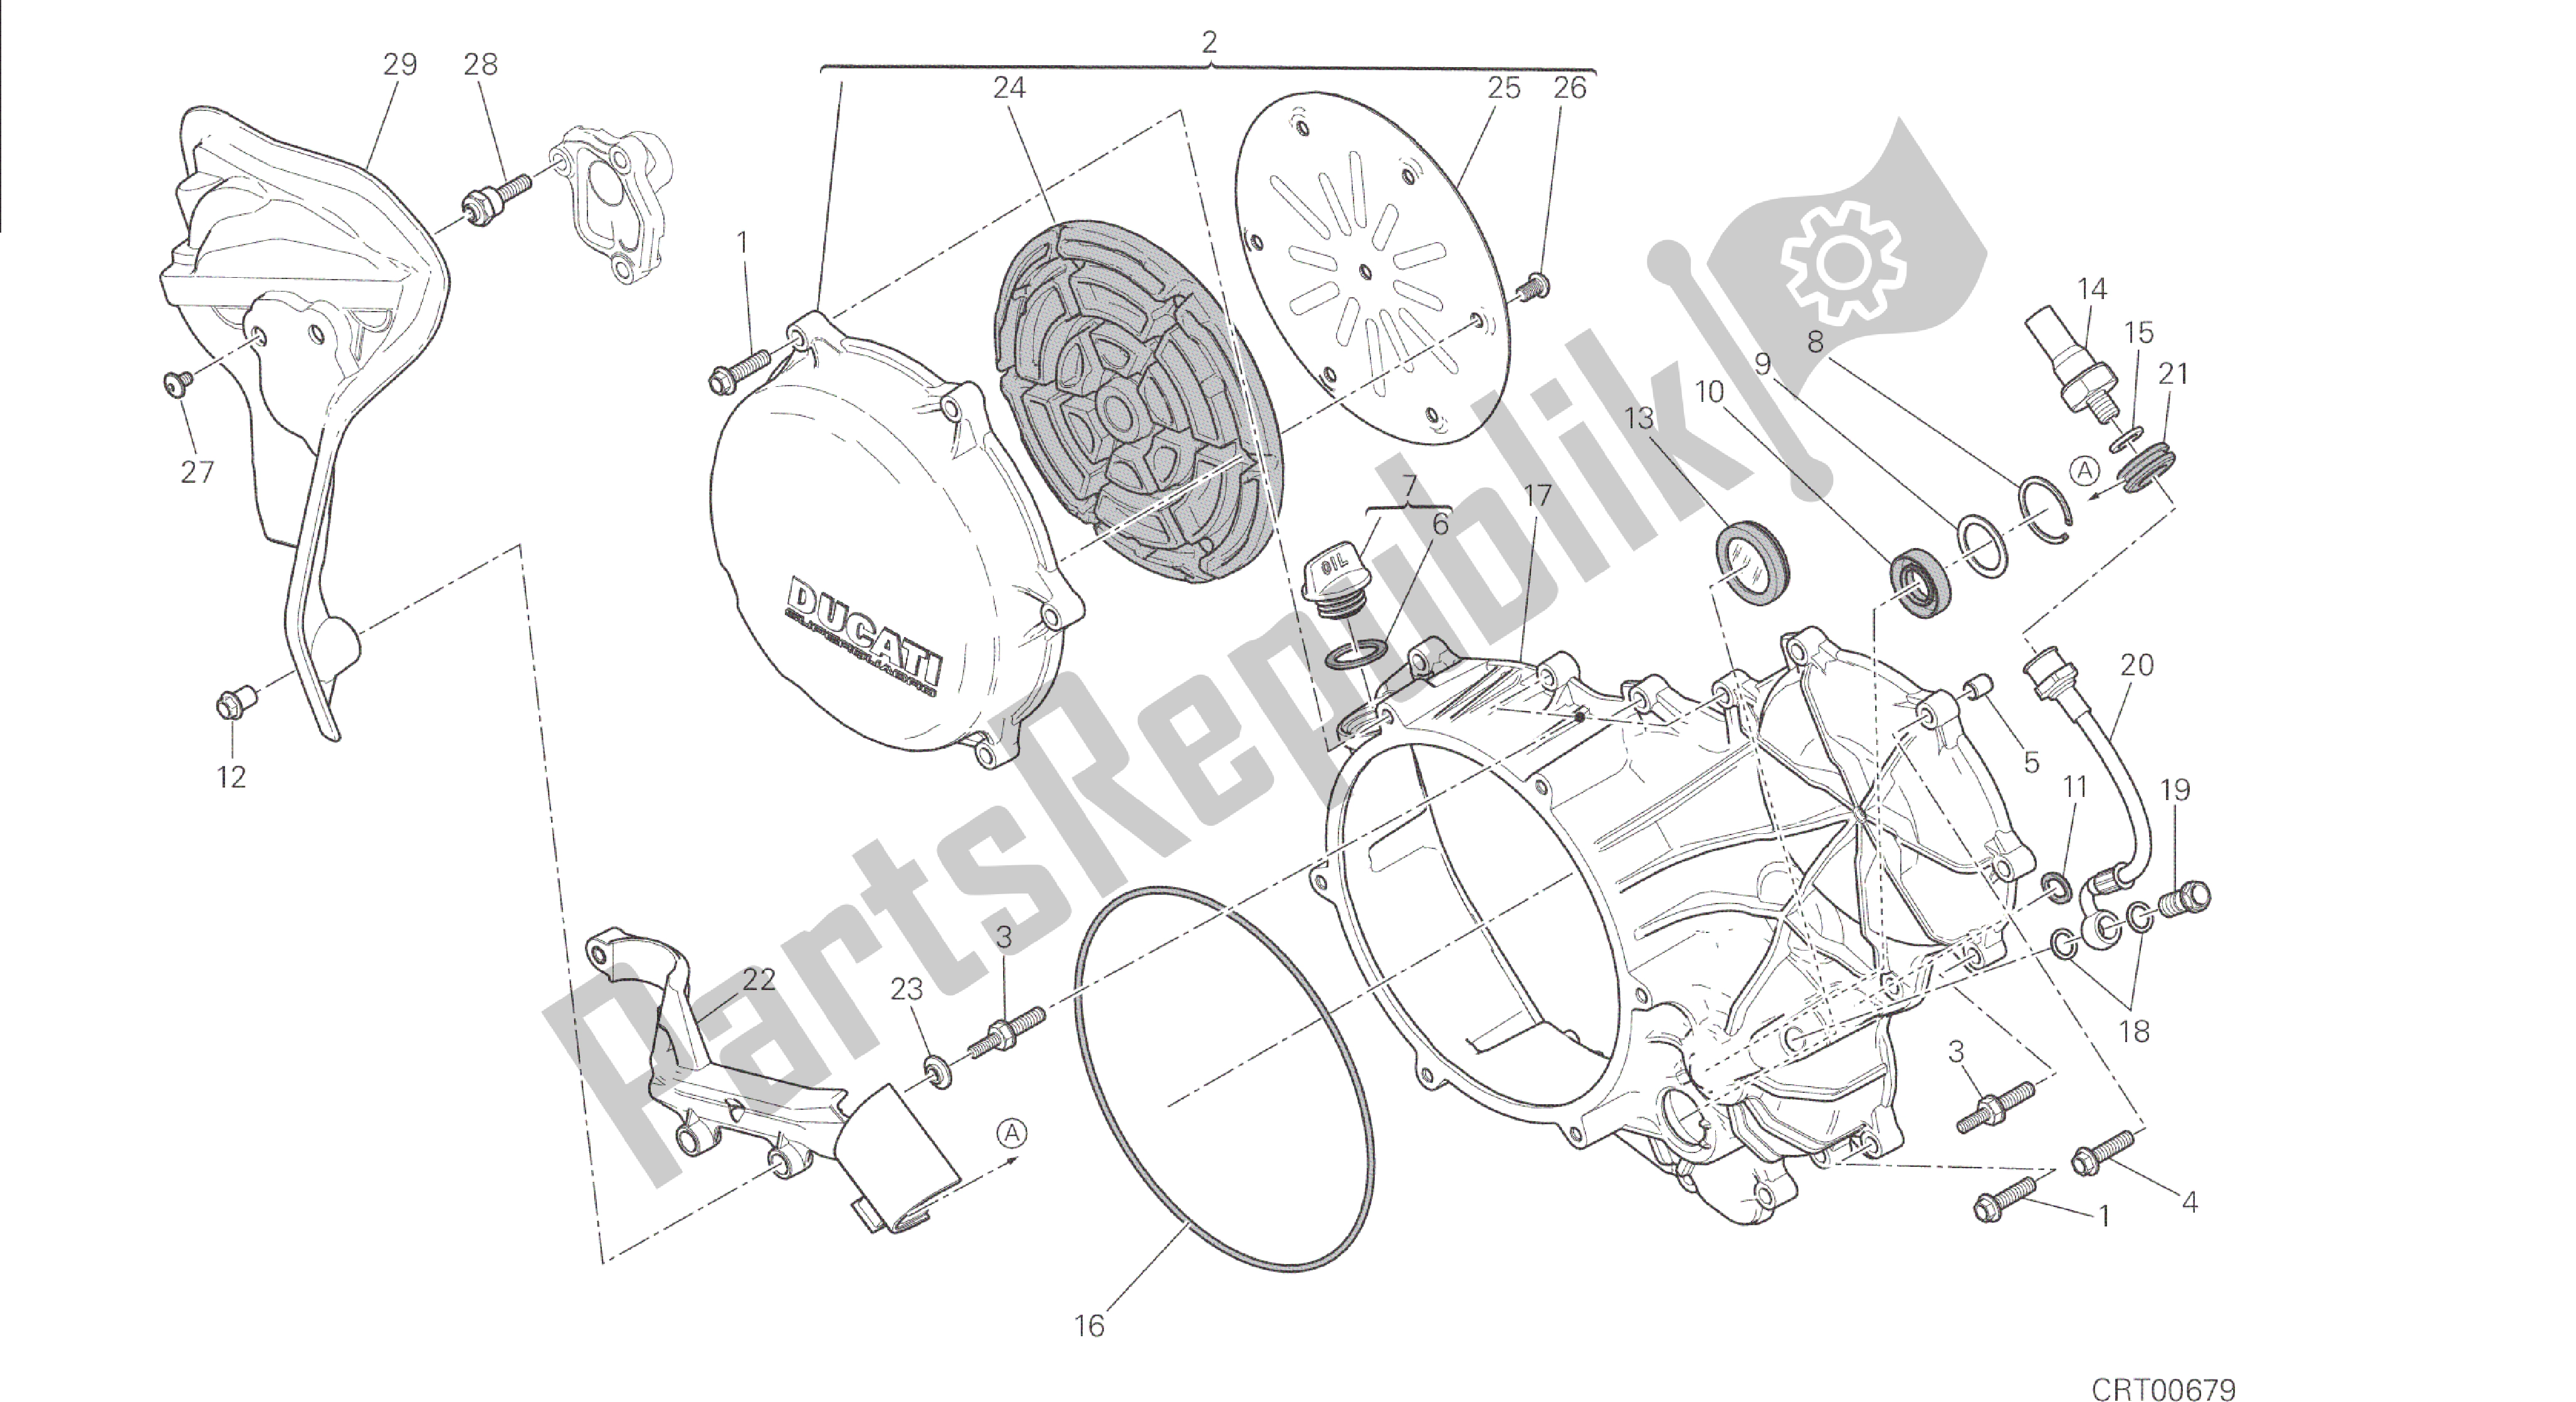 Toutes les pièces pour le Dessin 005 - Embrayage - Couvercle De Carter Latéral [mod: 1299; Xst: Aus, Eur, Fra] Groupe Moteur du Ducati Panigale 1299 2015